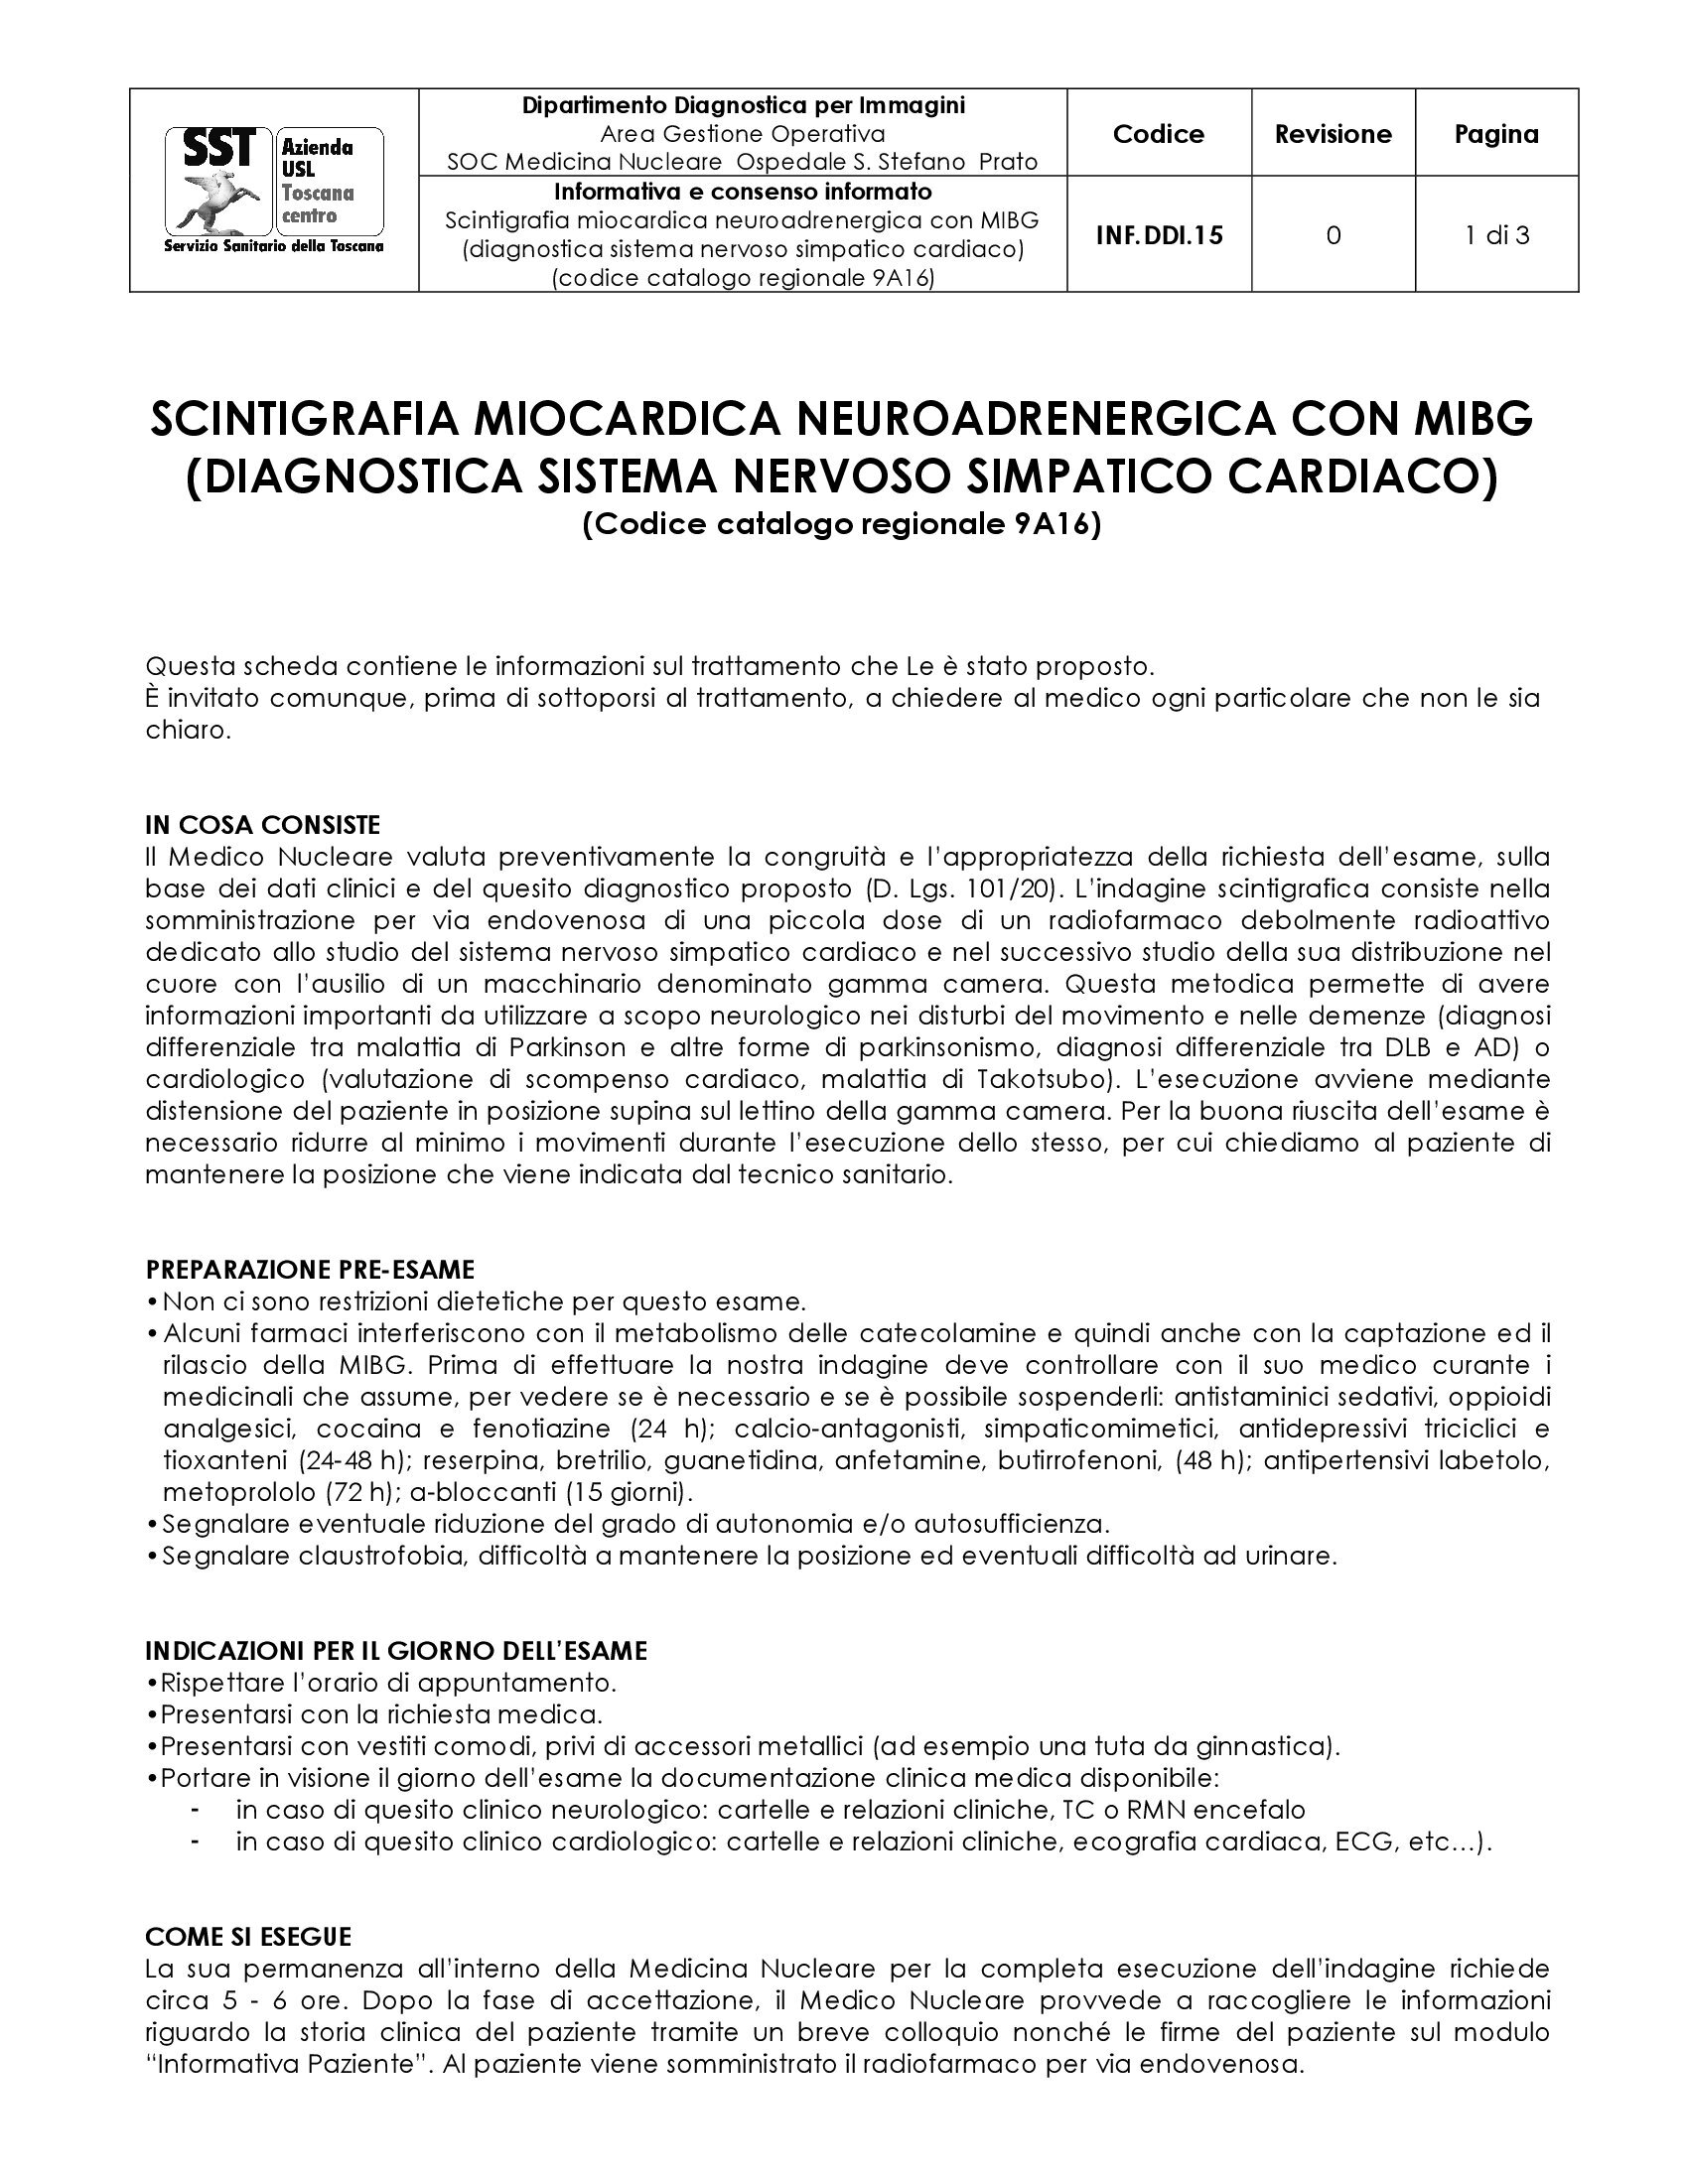 INF.DDI.15 Scintigrafia miocardica neuroadrenergica con MIBG (diagnostica sistema nervoso simpatico cardiaco)  (codice catalogo regionale 9A16)